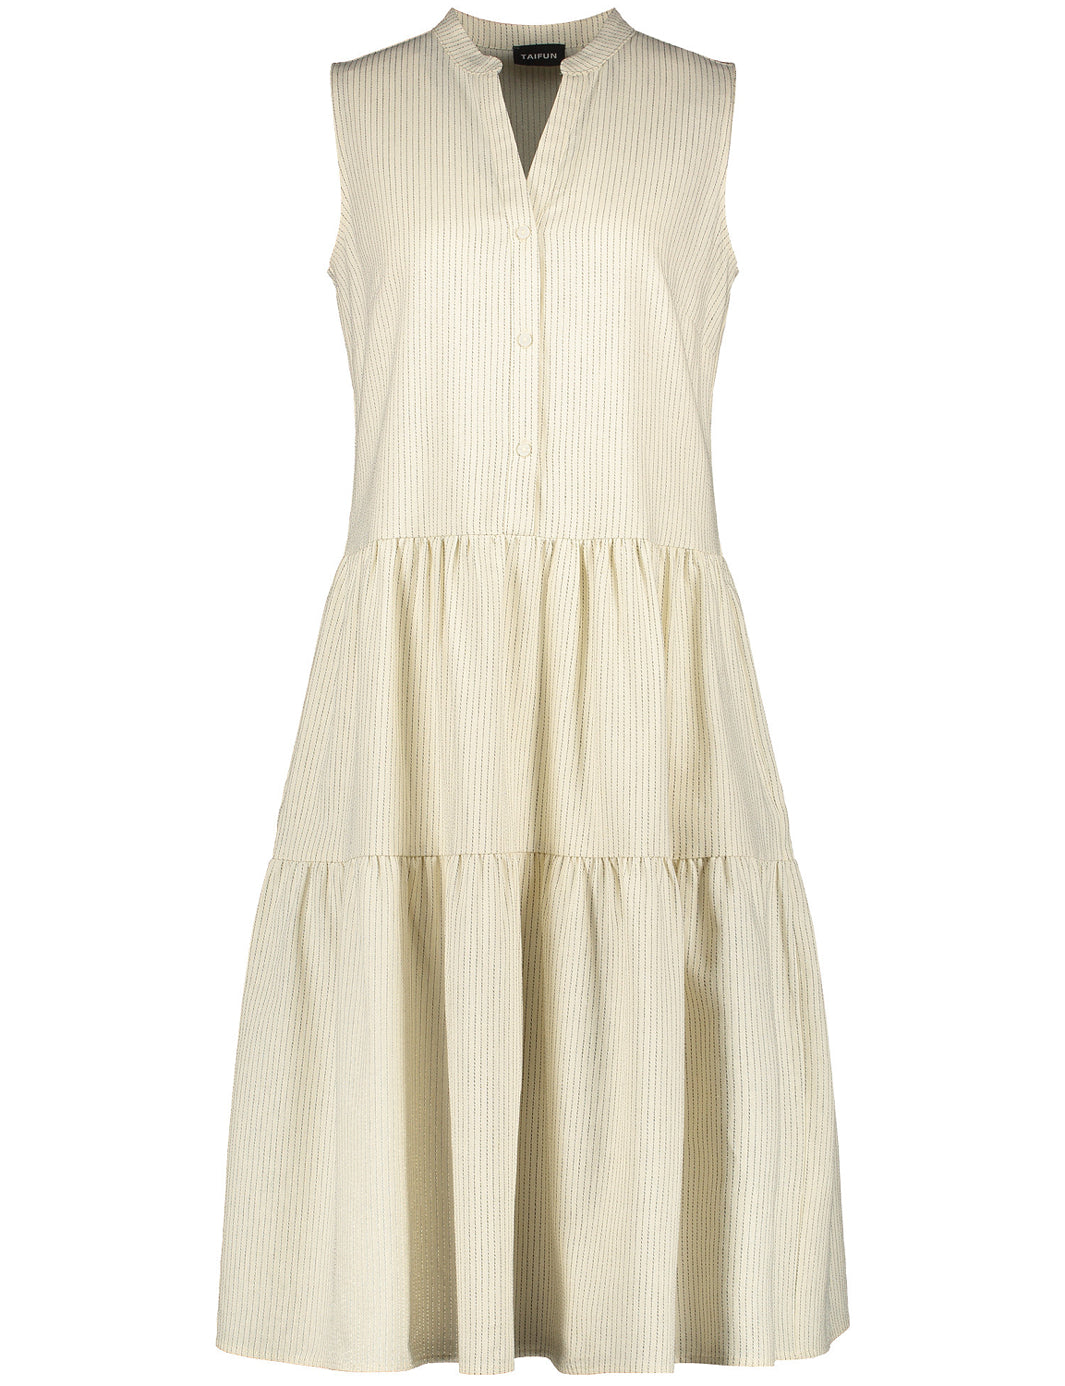 Summer Dress In A Cotton/Linen Blend